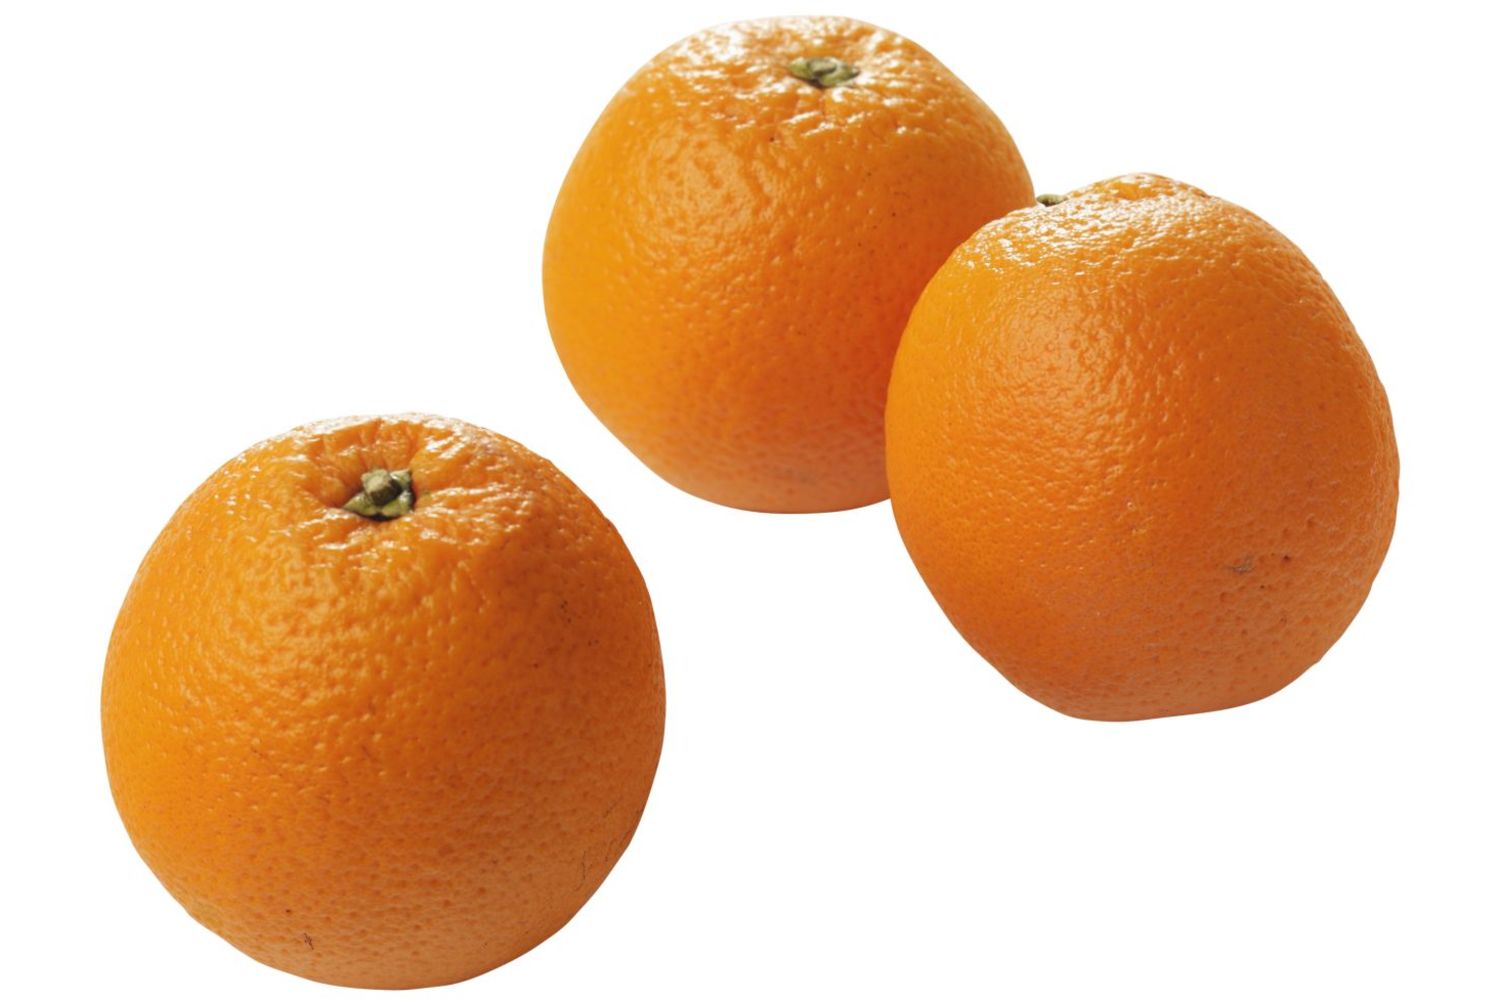 Perssinaasappel middel 67-77mm kist 15 kilogram 1